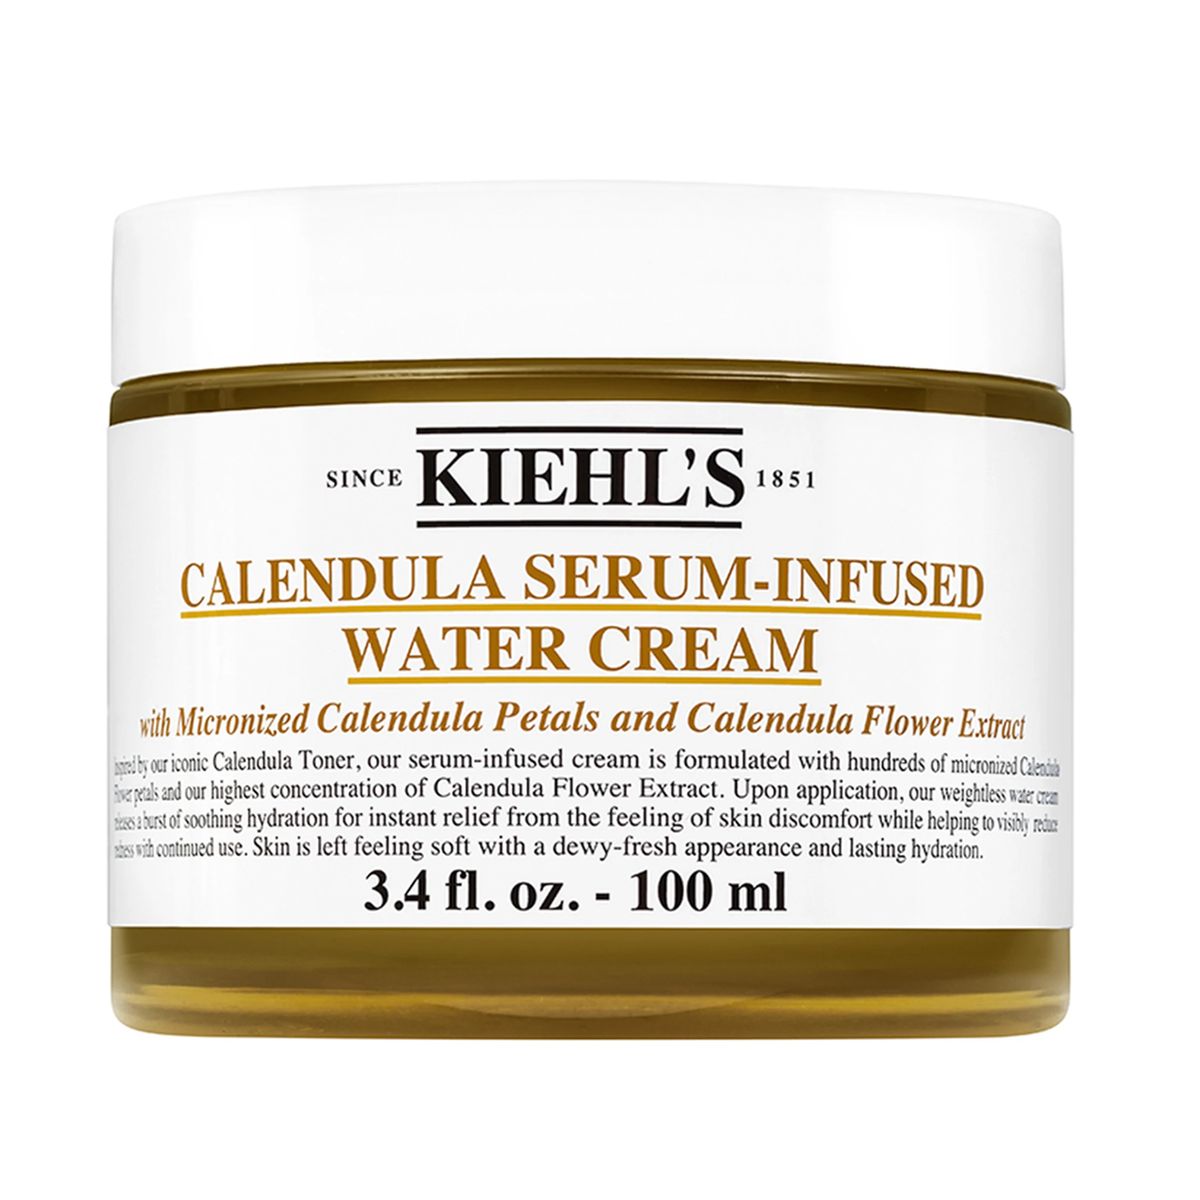 کرم آبرسان حاوی کالندولا~Calendula Serum Infused Water Cream~KIEHLS